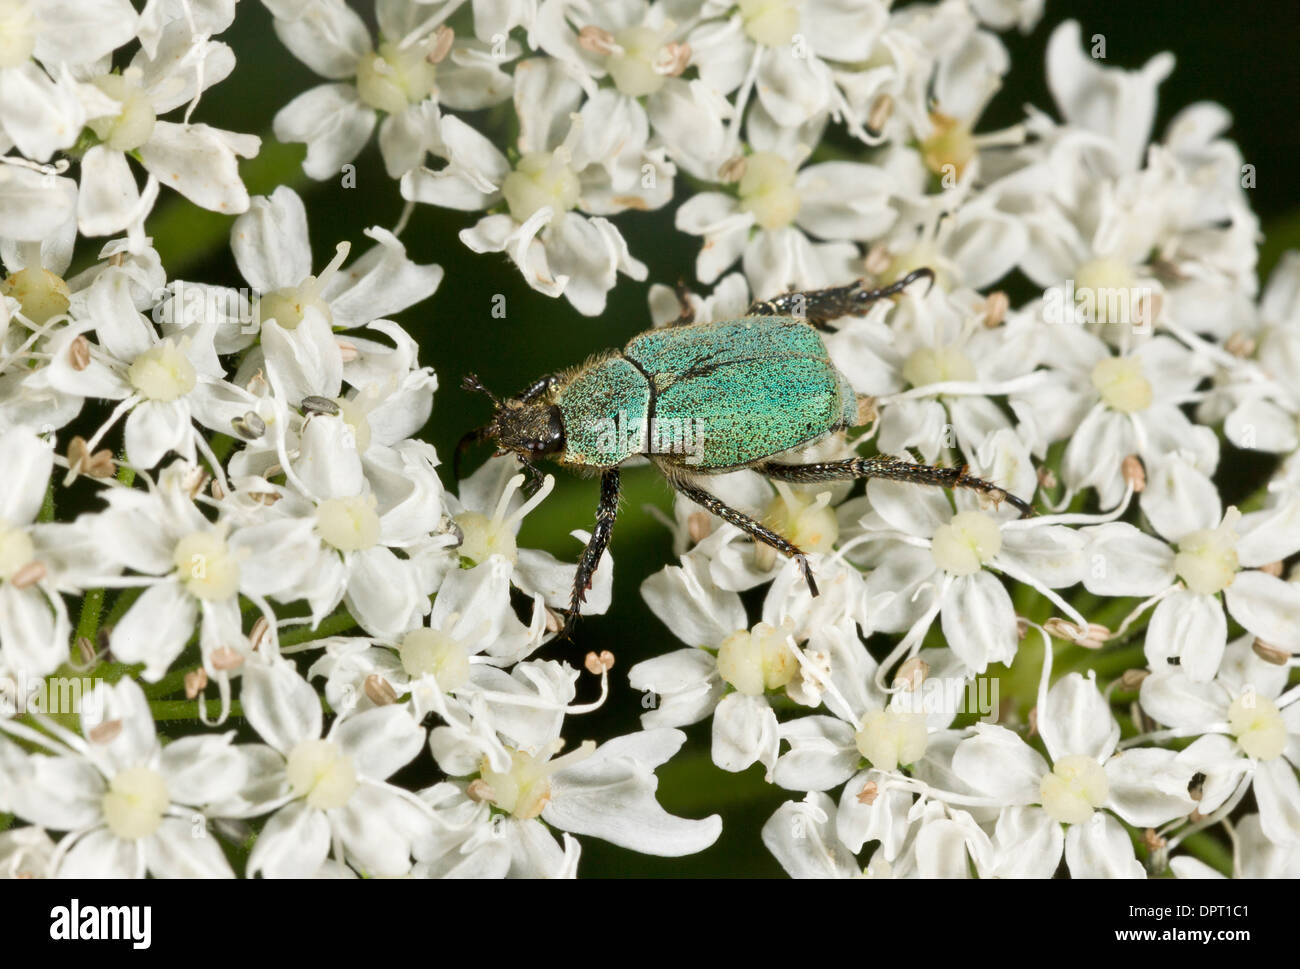 A Scarabeid beetle, Hoplia argentea, feeding on umbellifer flowers. Turkey. Stock Photo